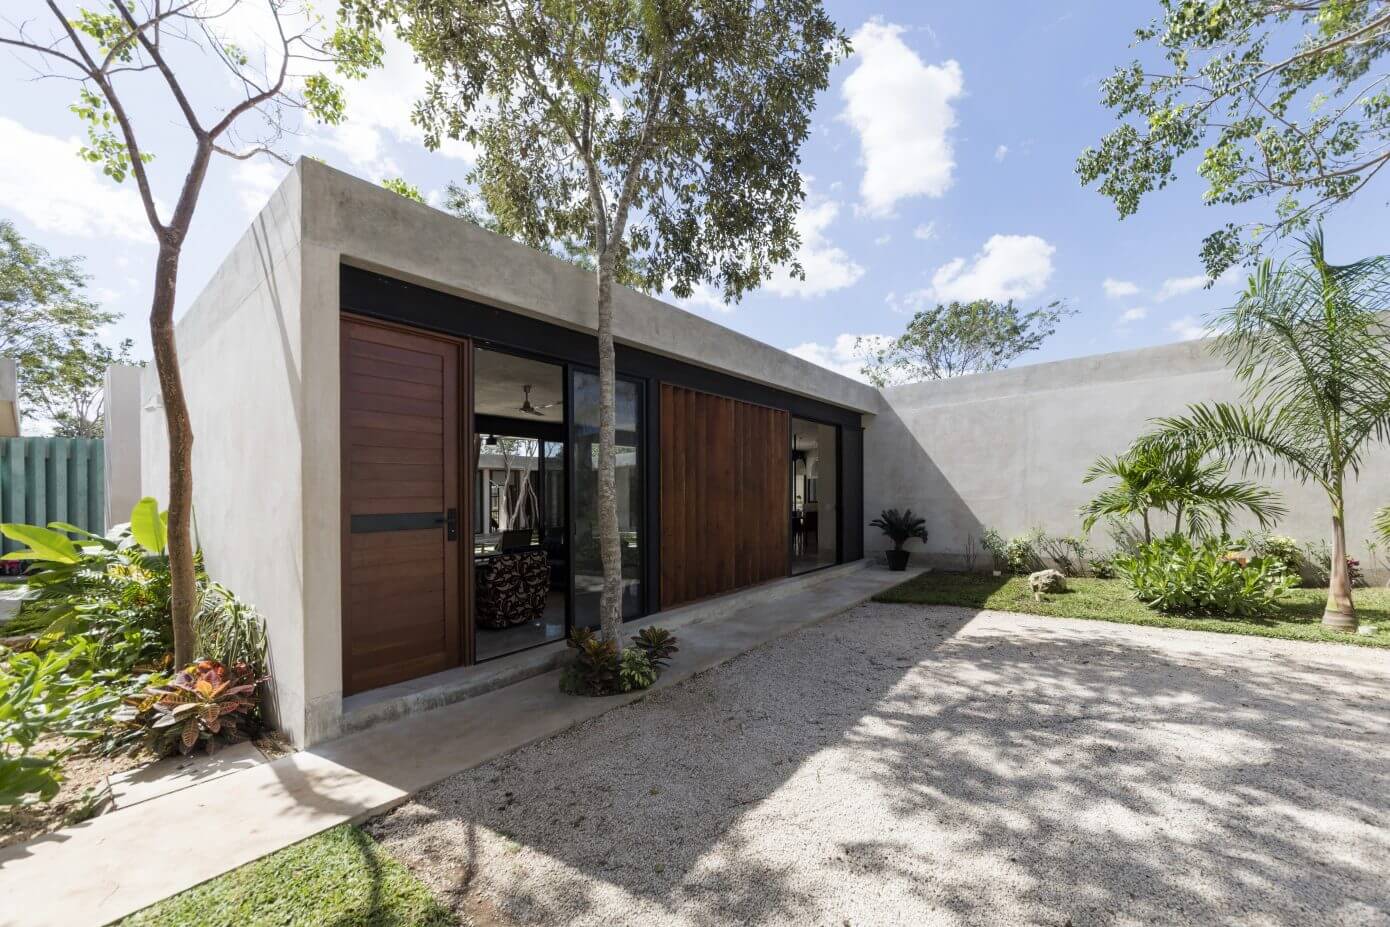 Casa Canto Cholul by Taller Estilo Arquitectura